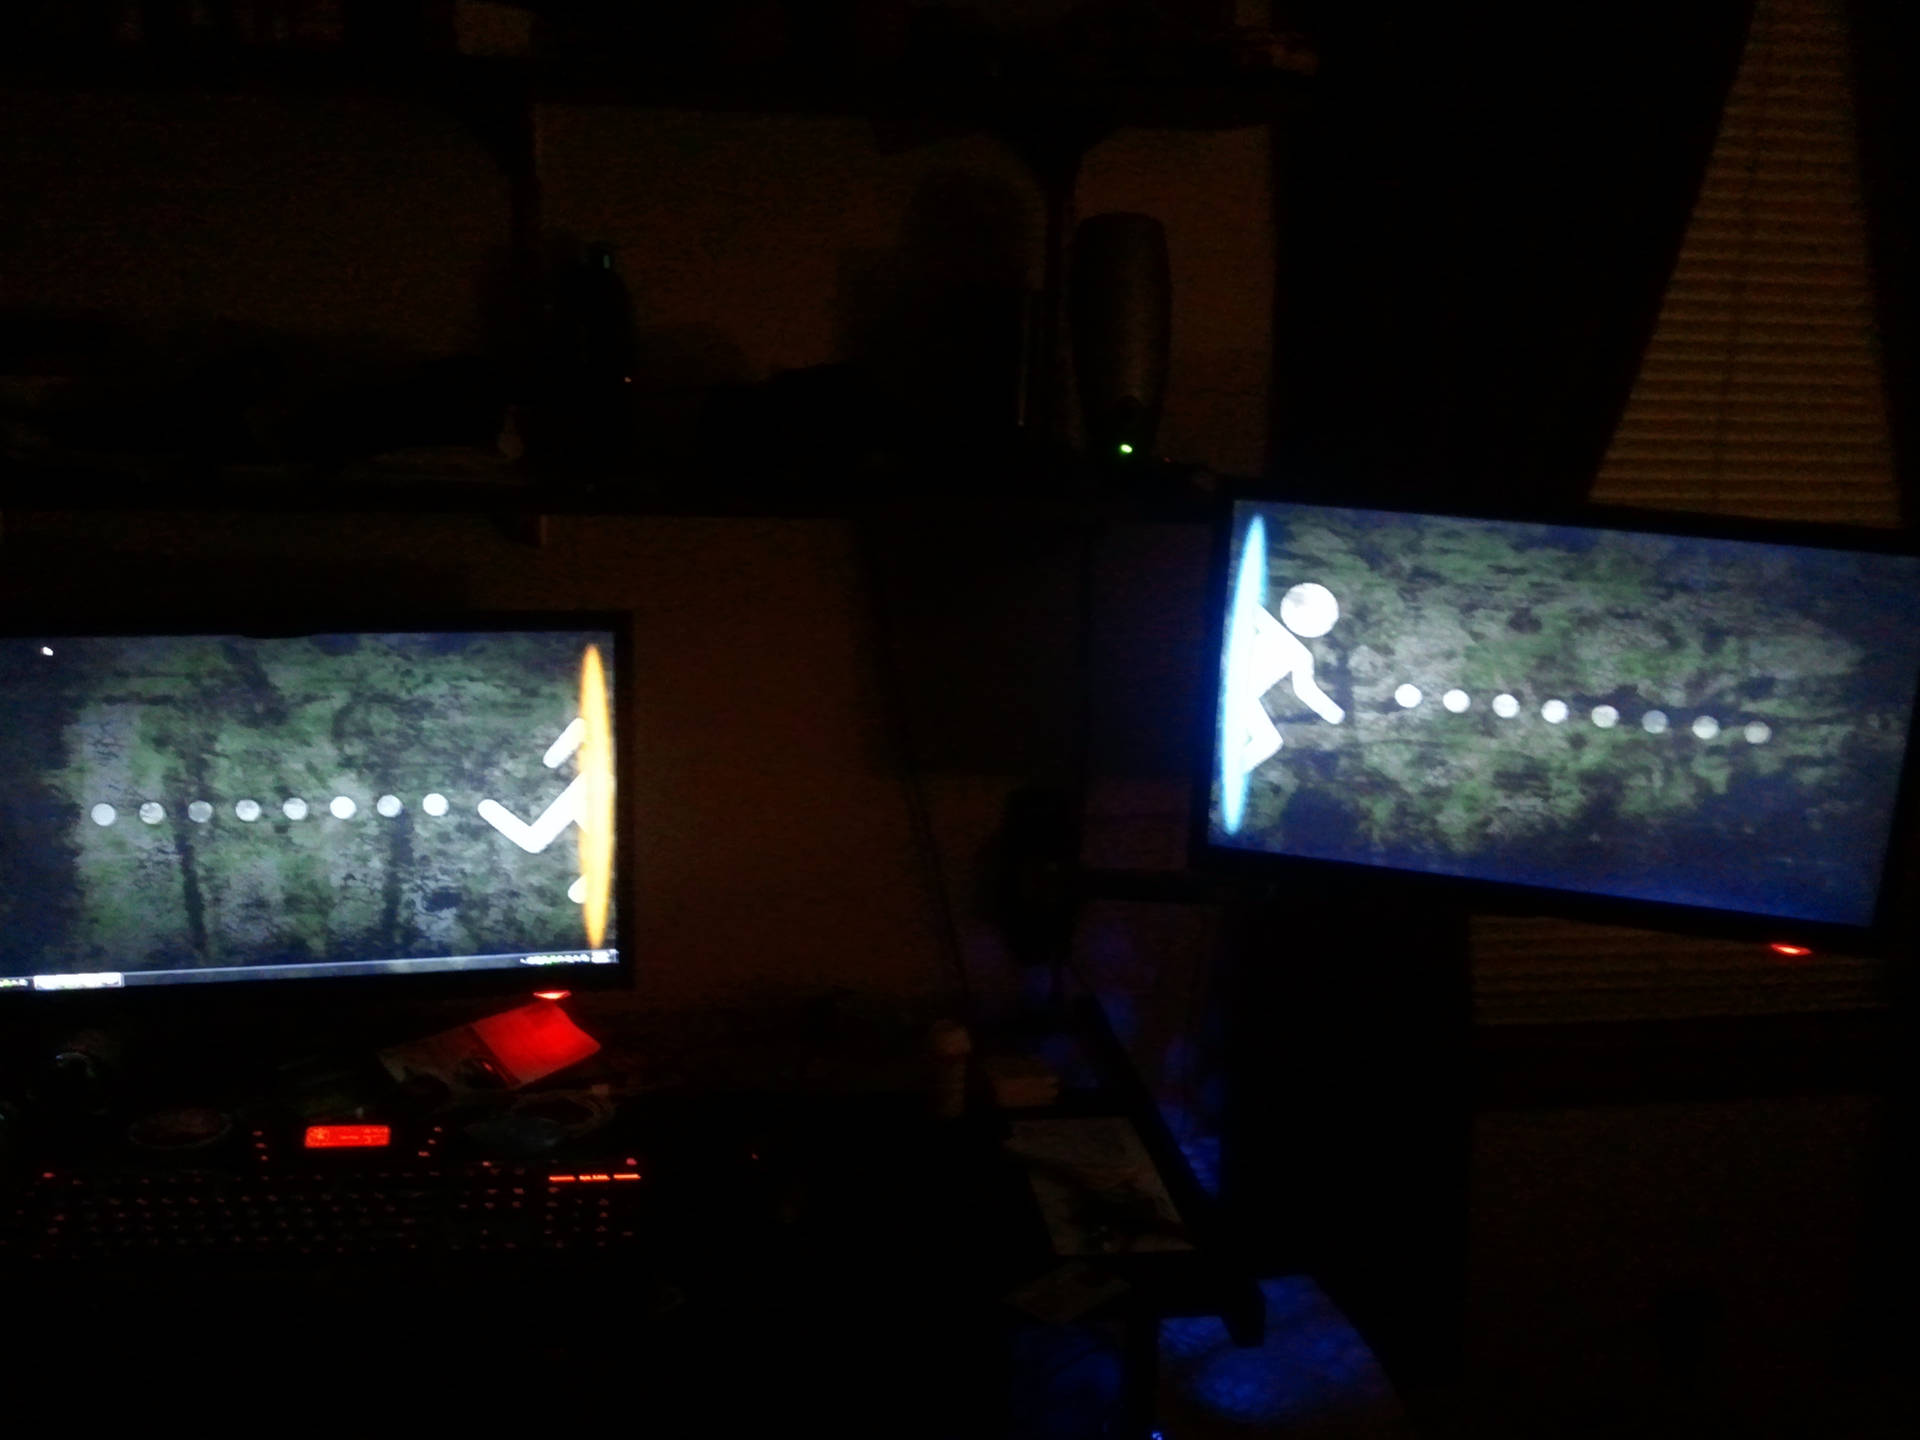 Portal 2 Dual Screen Computer Monitor Wallpaper